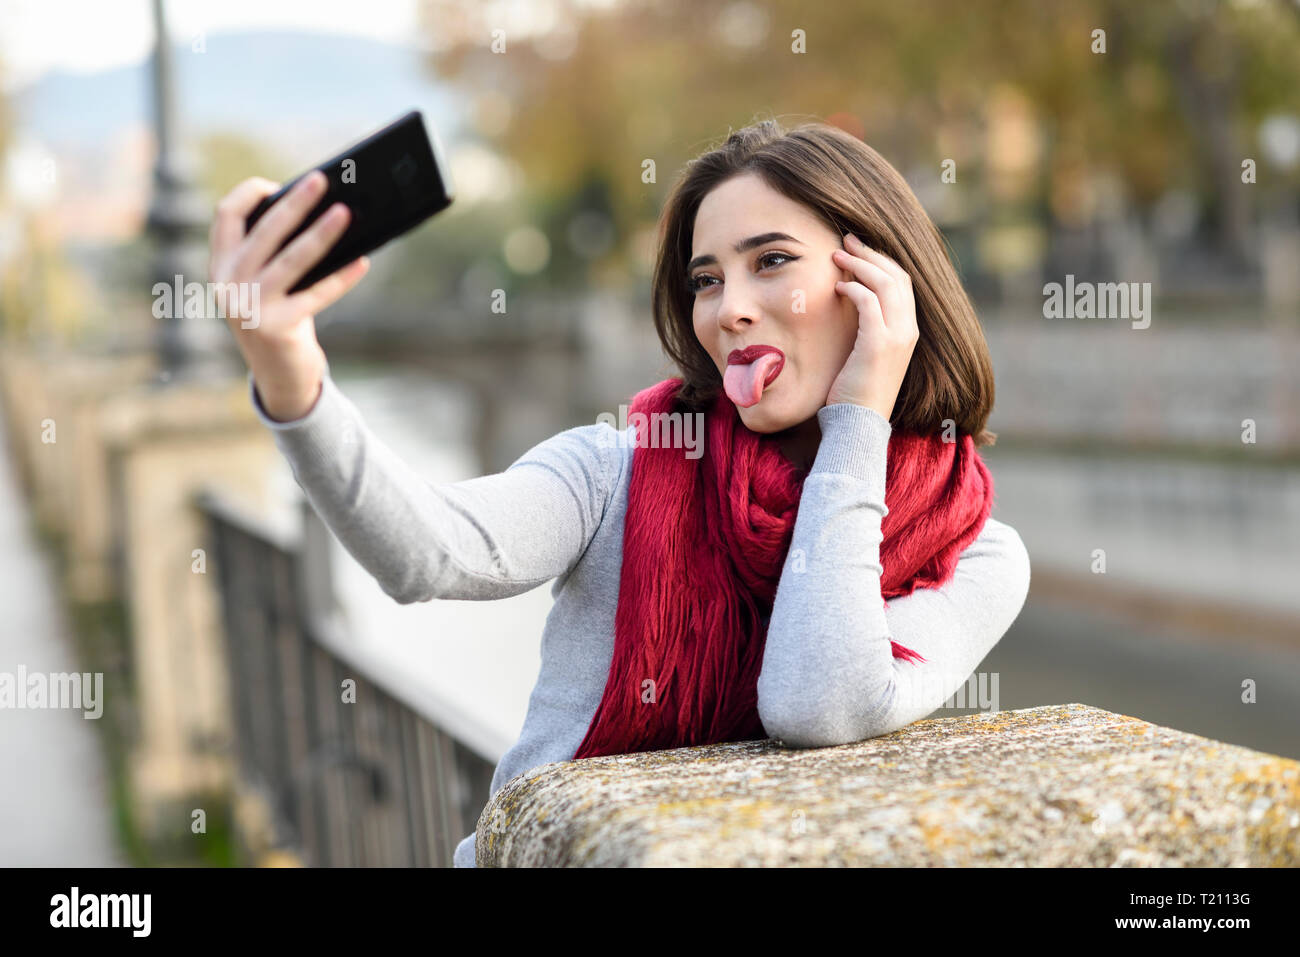 Ritratto di giovane donna che indossa sciarpa rossa spuntavano lingua tenendo selfie con un telefono cellulare Foto Stock